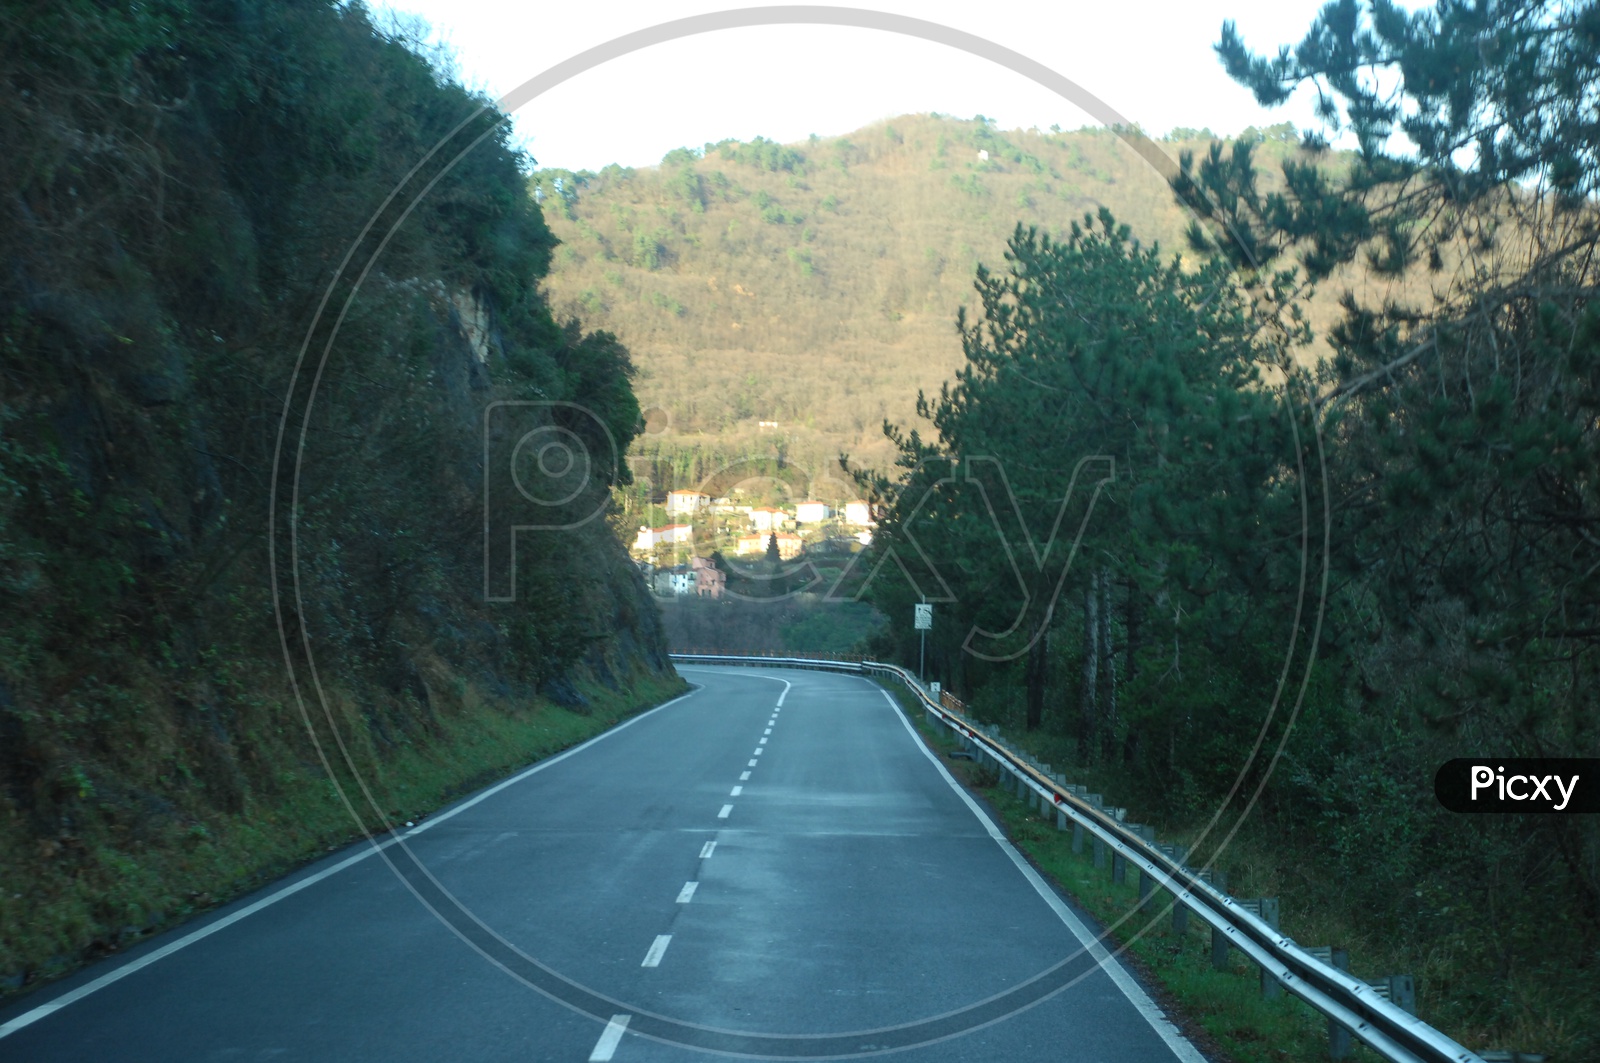 Roadway alongside the mountain